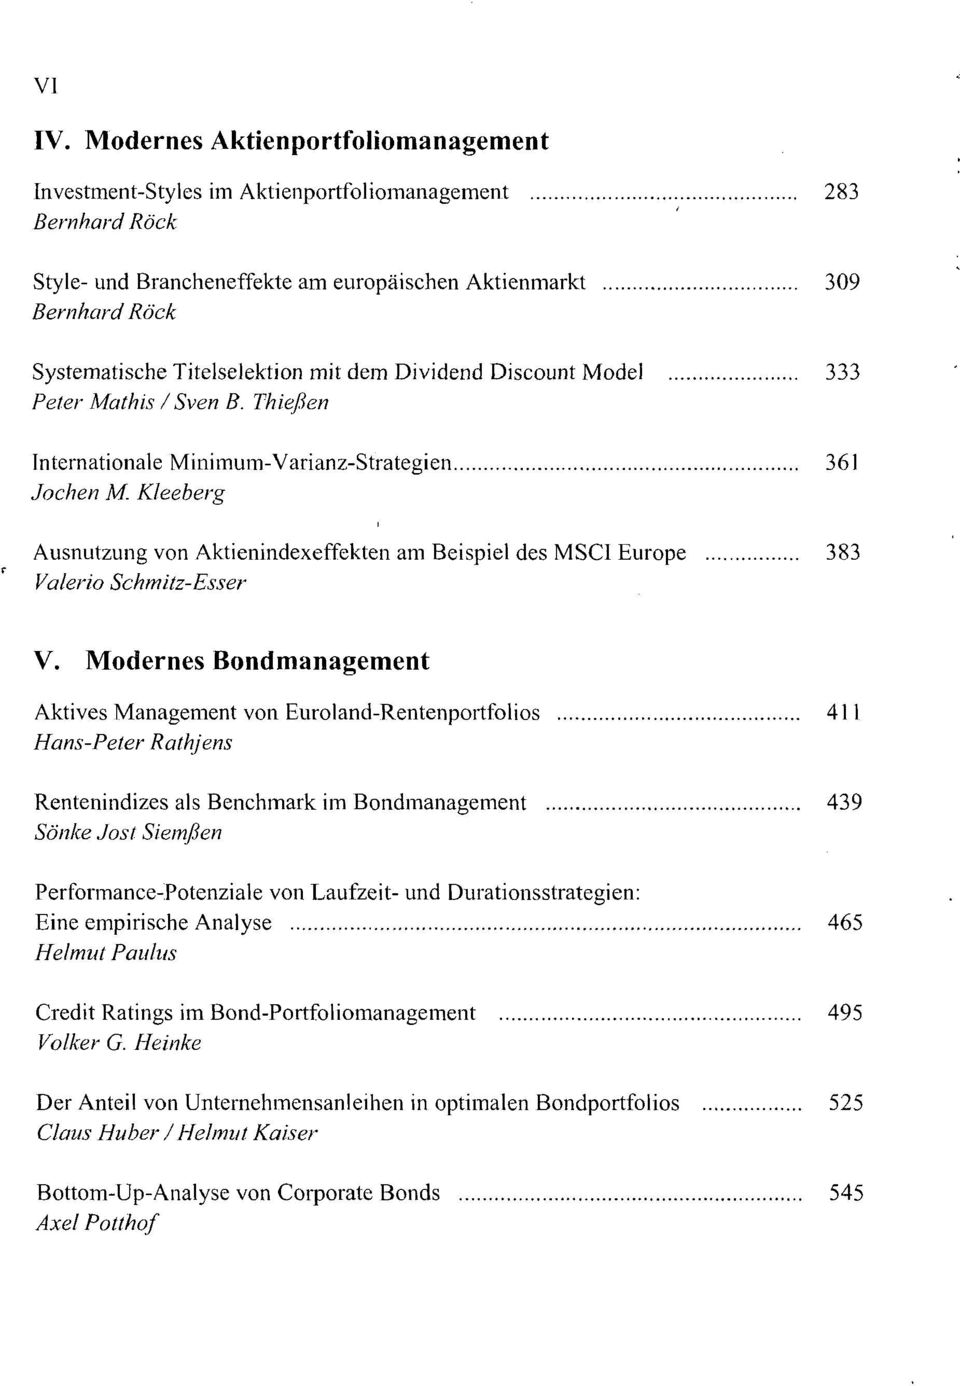 Titelselektion mit dem Dividend Discount Model 333 Peter Mathis / Sven B. Thießen Internationale Minimum-Varianz-Strategien 361 Jochen M.